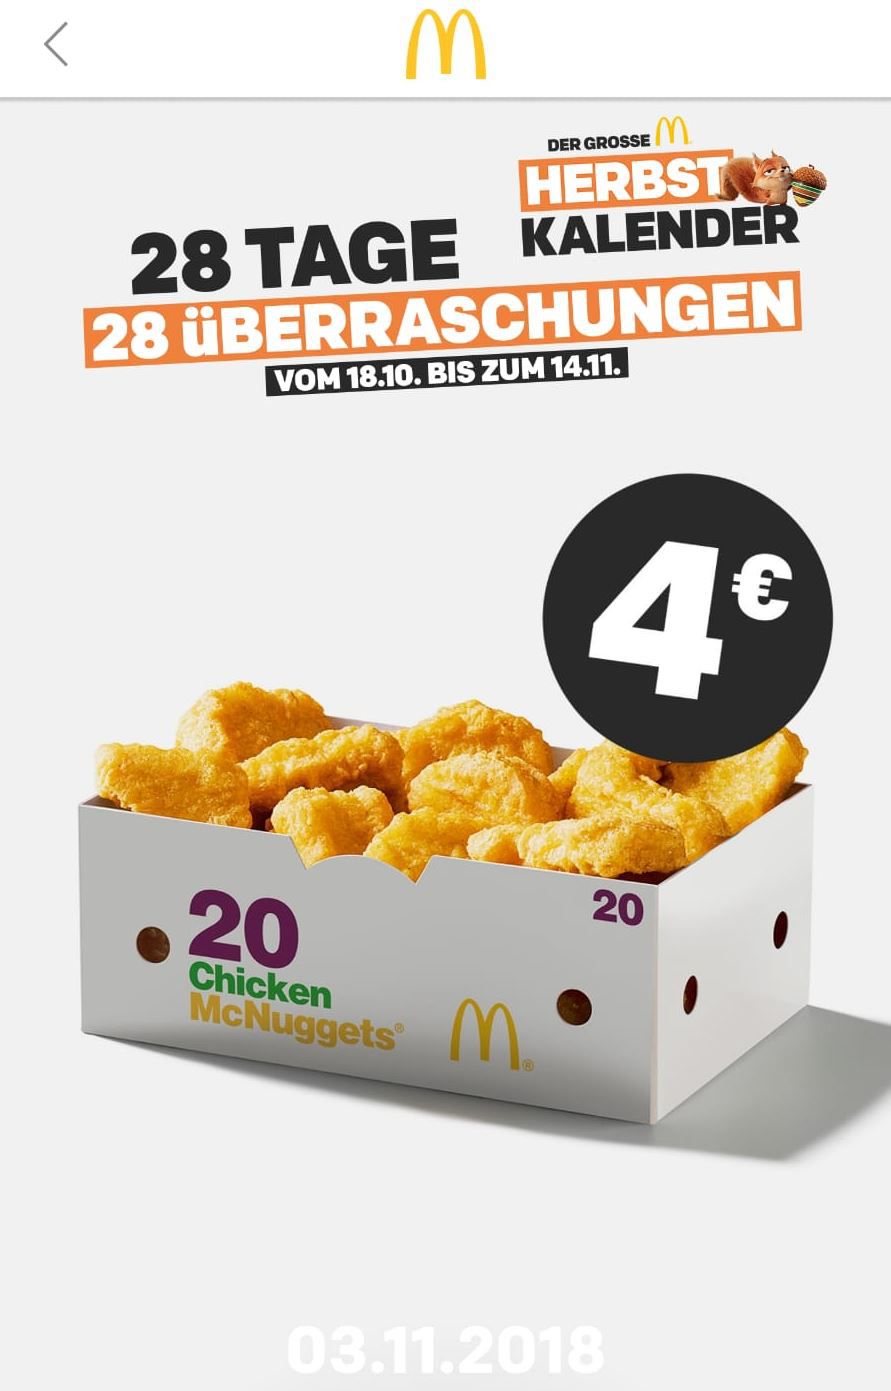 Info! McDonalds Herbst Kalender   heute mit der App: 20 Chicken McNugget für 4€